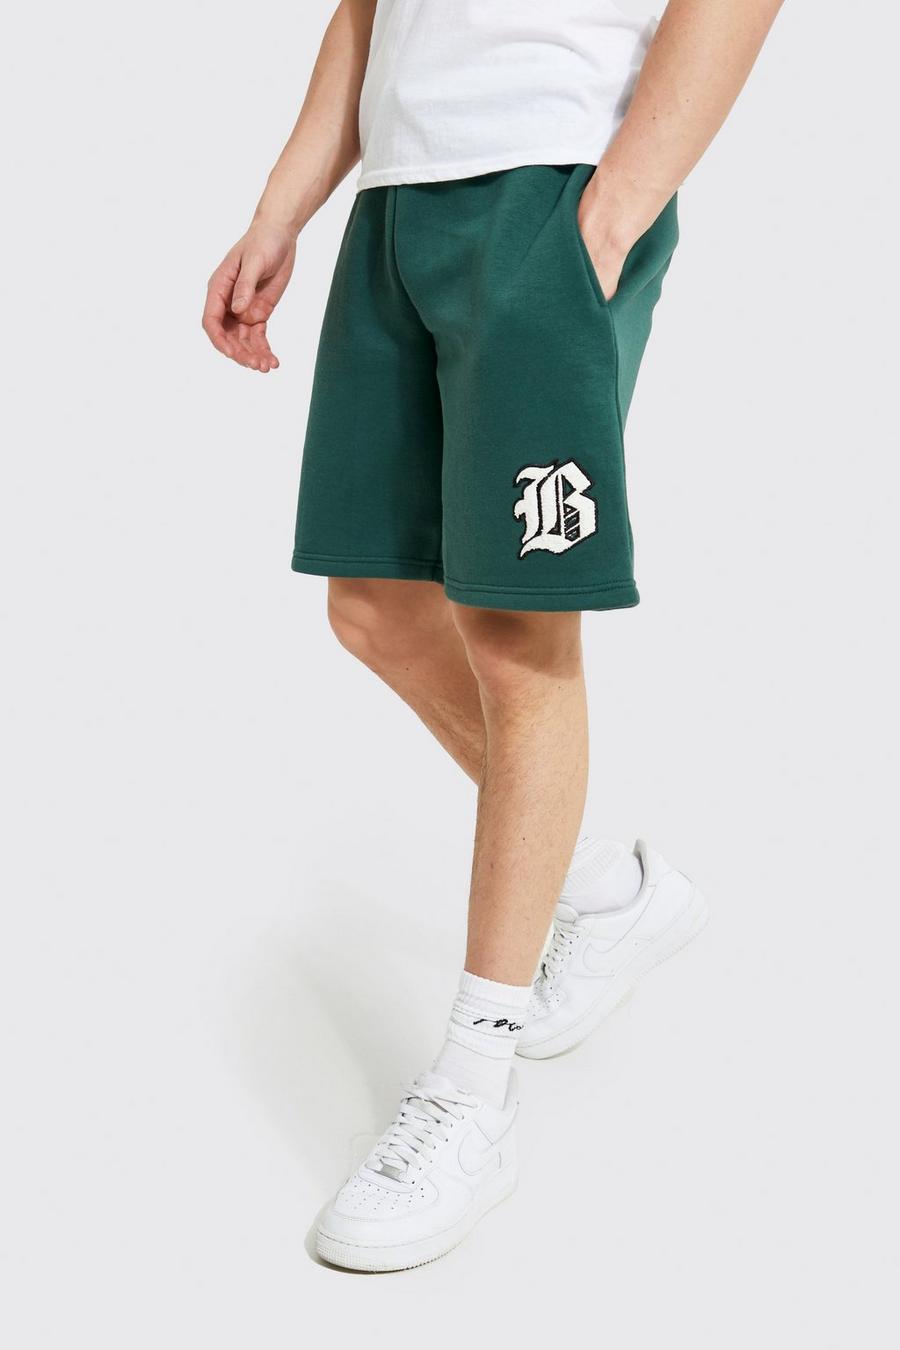 Pantalón corto oversize de tela jersey con aplique de letra B, Forest verde